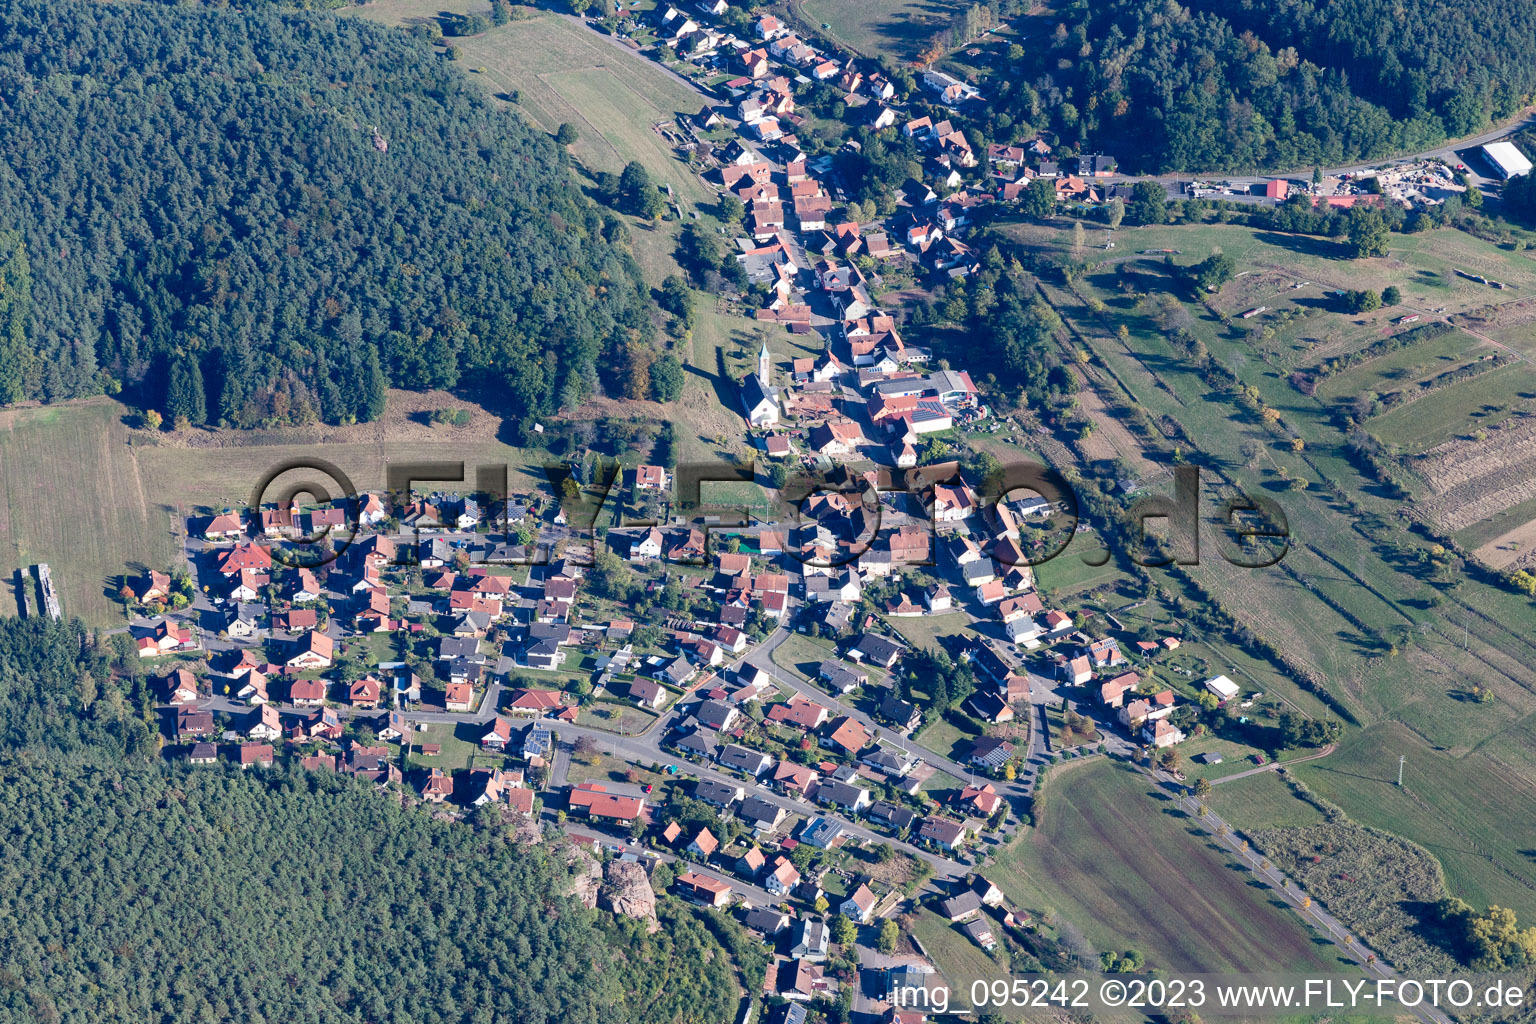 Dahn im Bundesland Rheinland-Pfalz, Deutschland von der Drohne aus gesehen